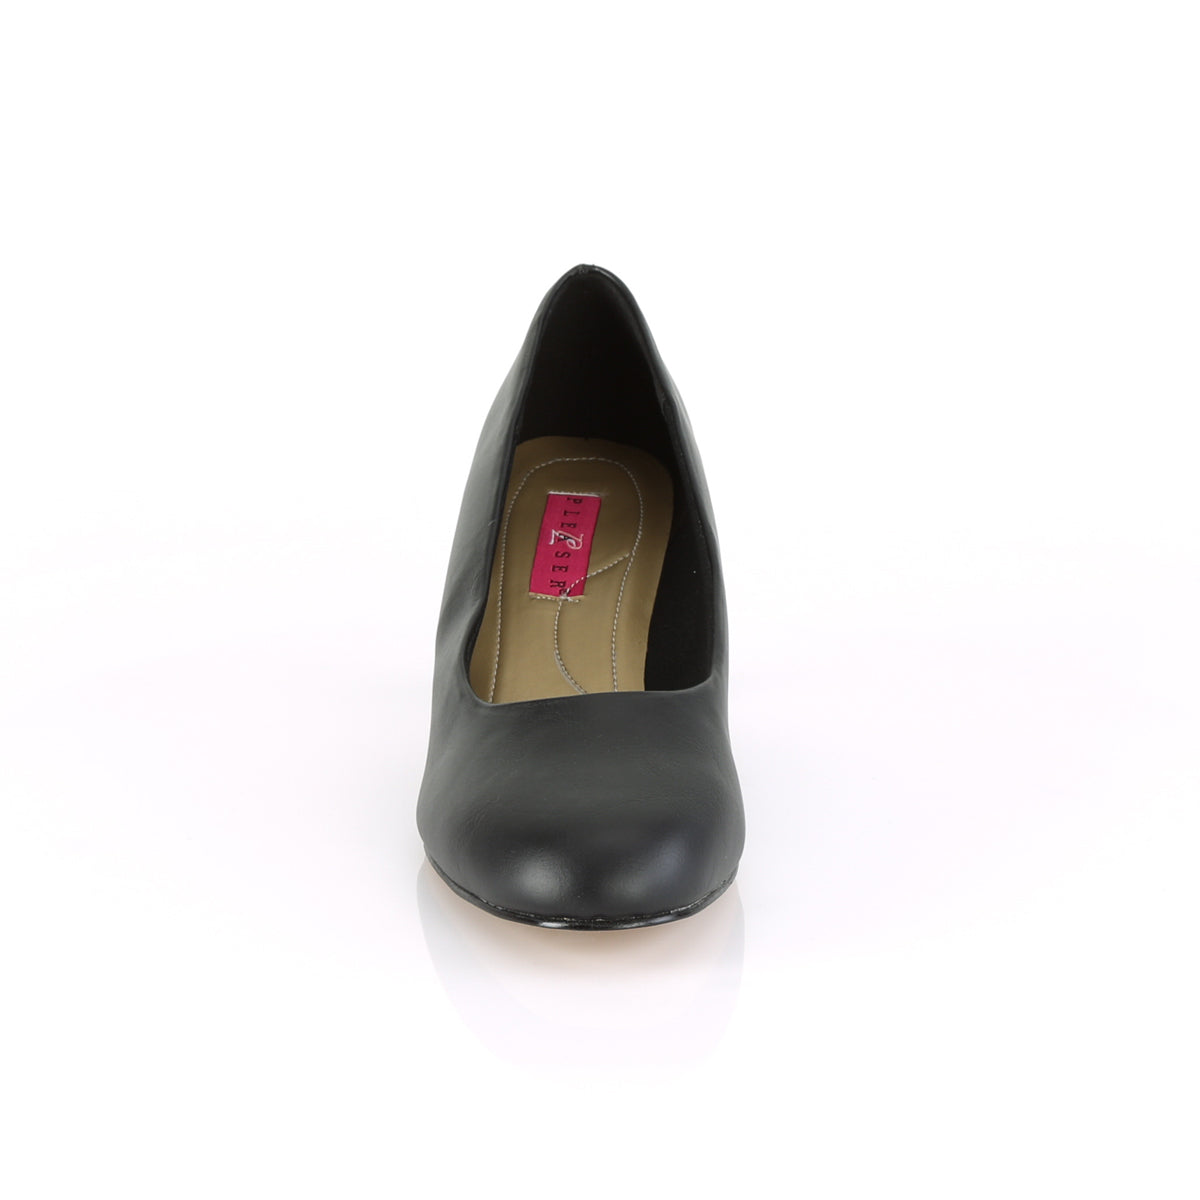 FEFE-01 Pleaser Pink Label 2.5 Inch Heel Black Fetish Shoes-Pleaser Pink Label- Drag Queen Shoes